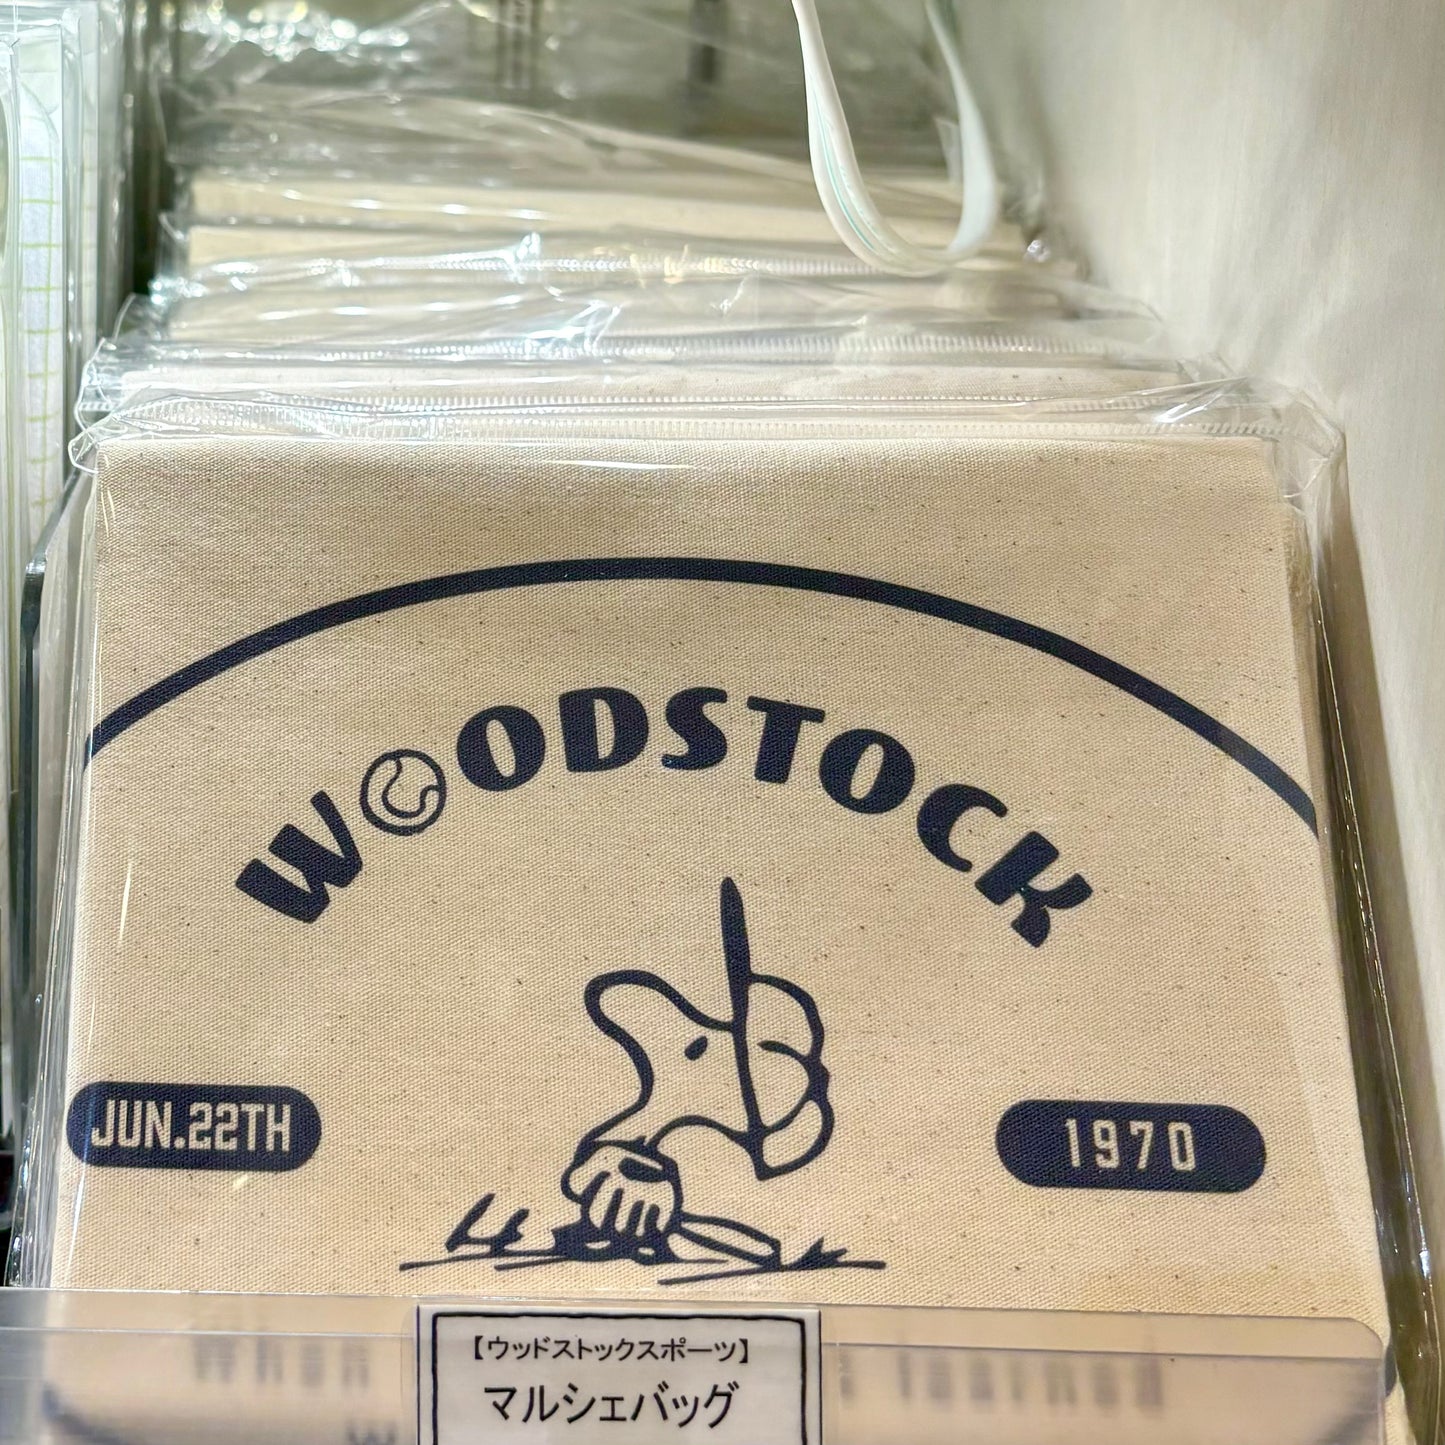 【訂貨】Woodstock Sports - Pouch / 卡套 / 鑰匙扣 / 布袋 / 頸繩